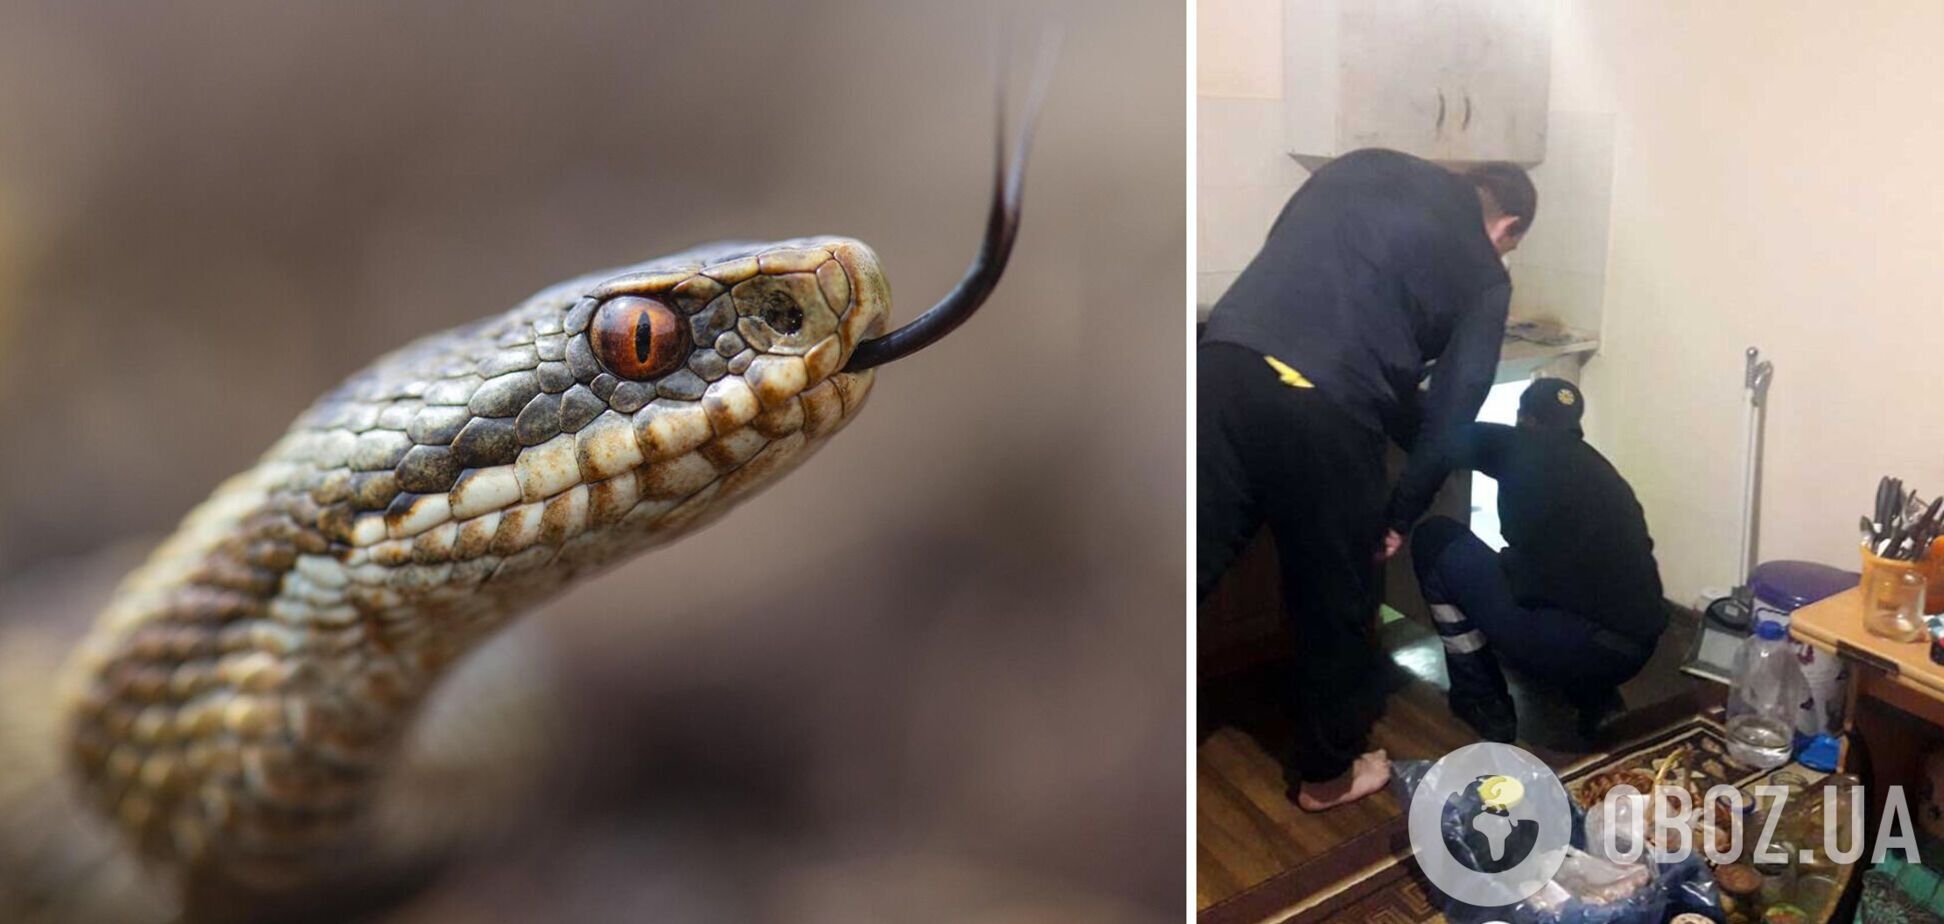 В Днепре жители дома обнаружили непрошенную гостью: метровая змея поселилась на кухне. Фото